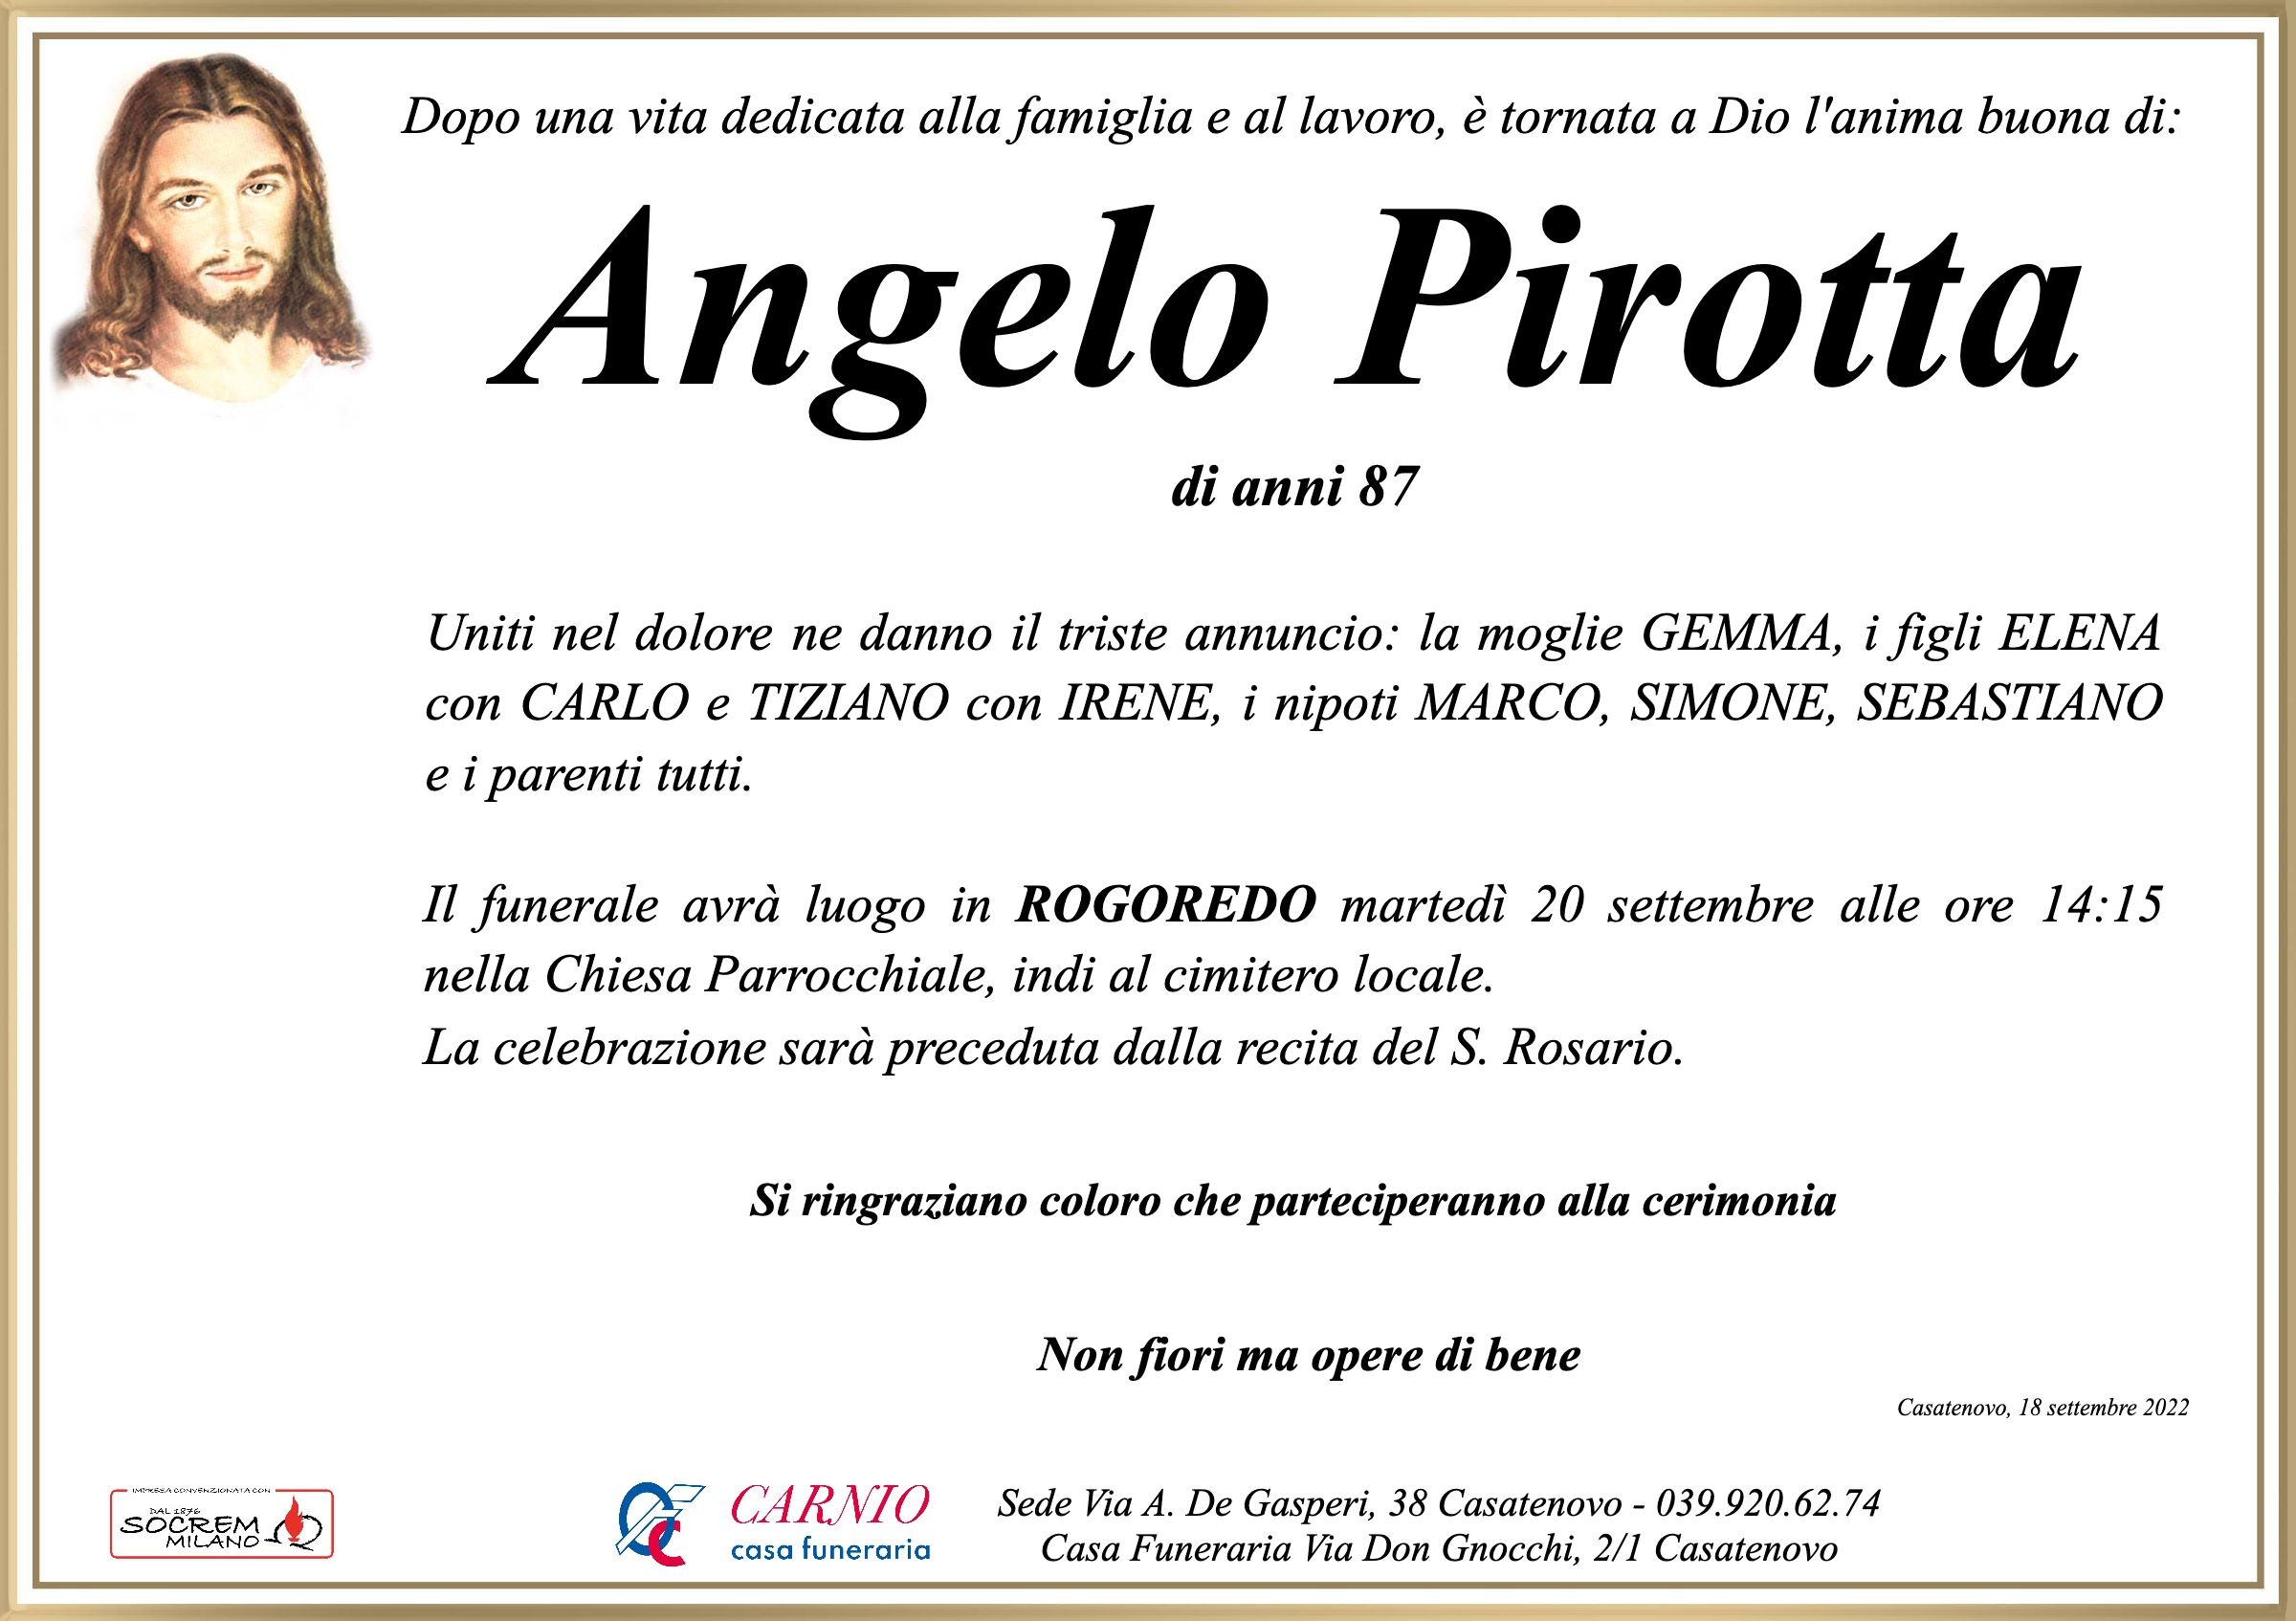 Angelo Pirotta